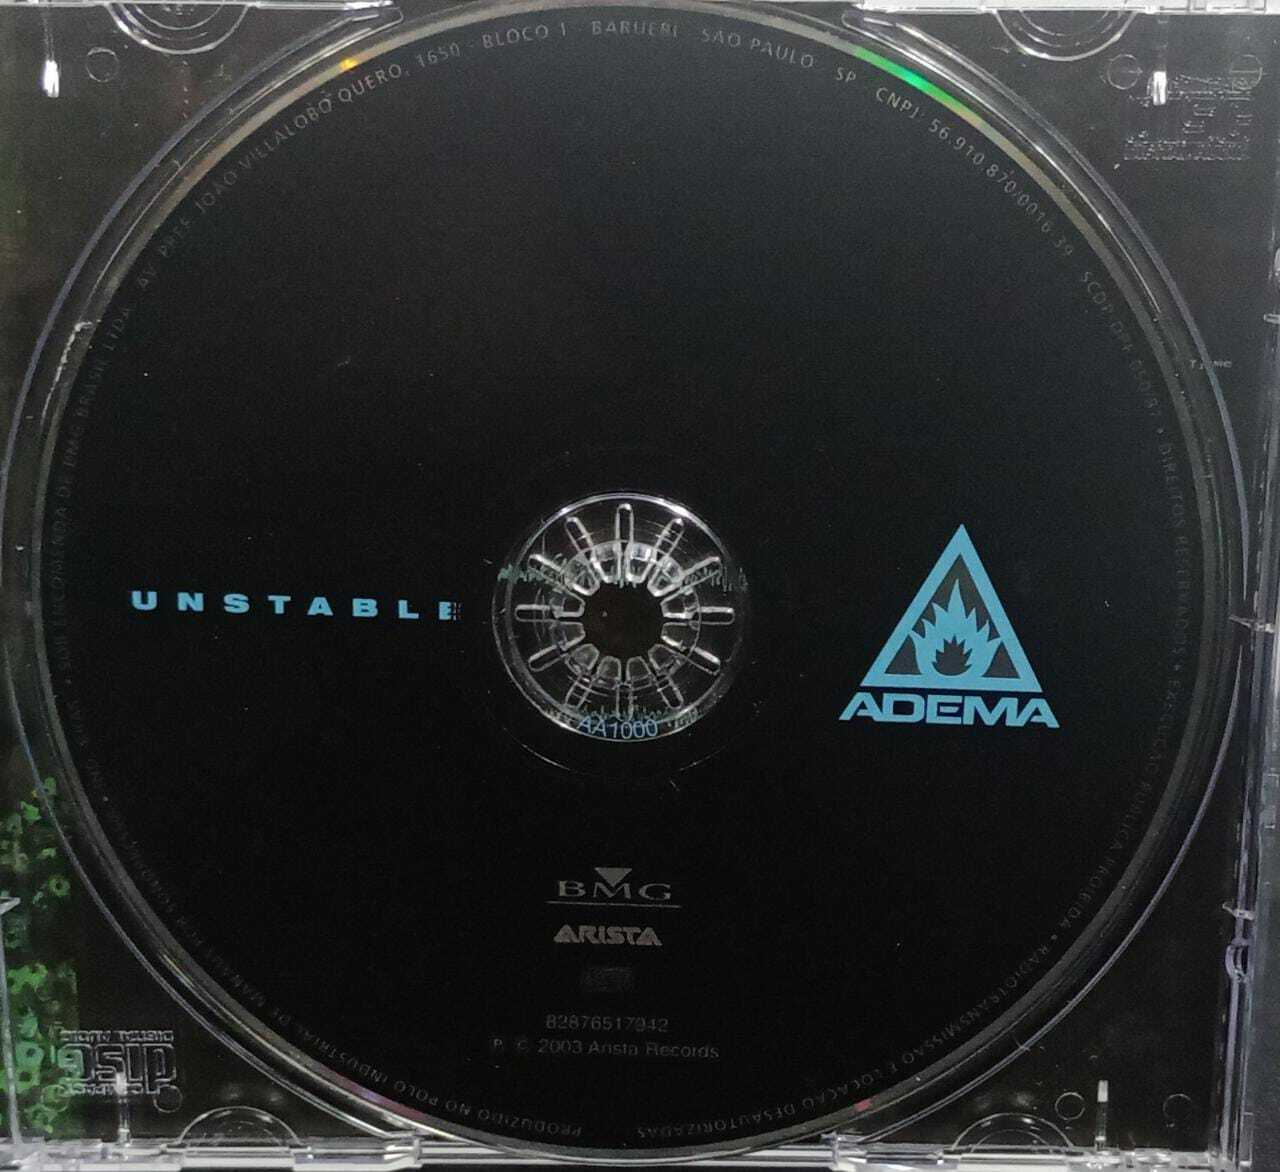 CD - Adema - Unstable